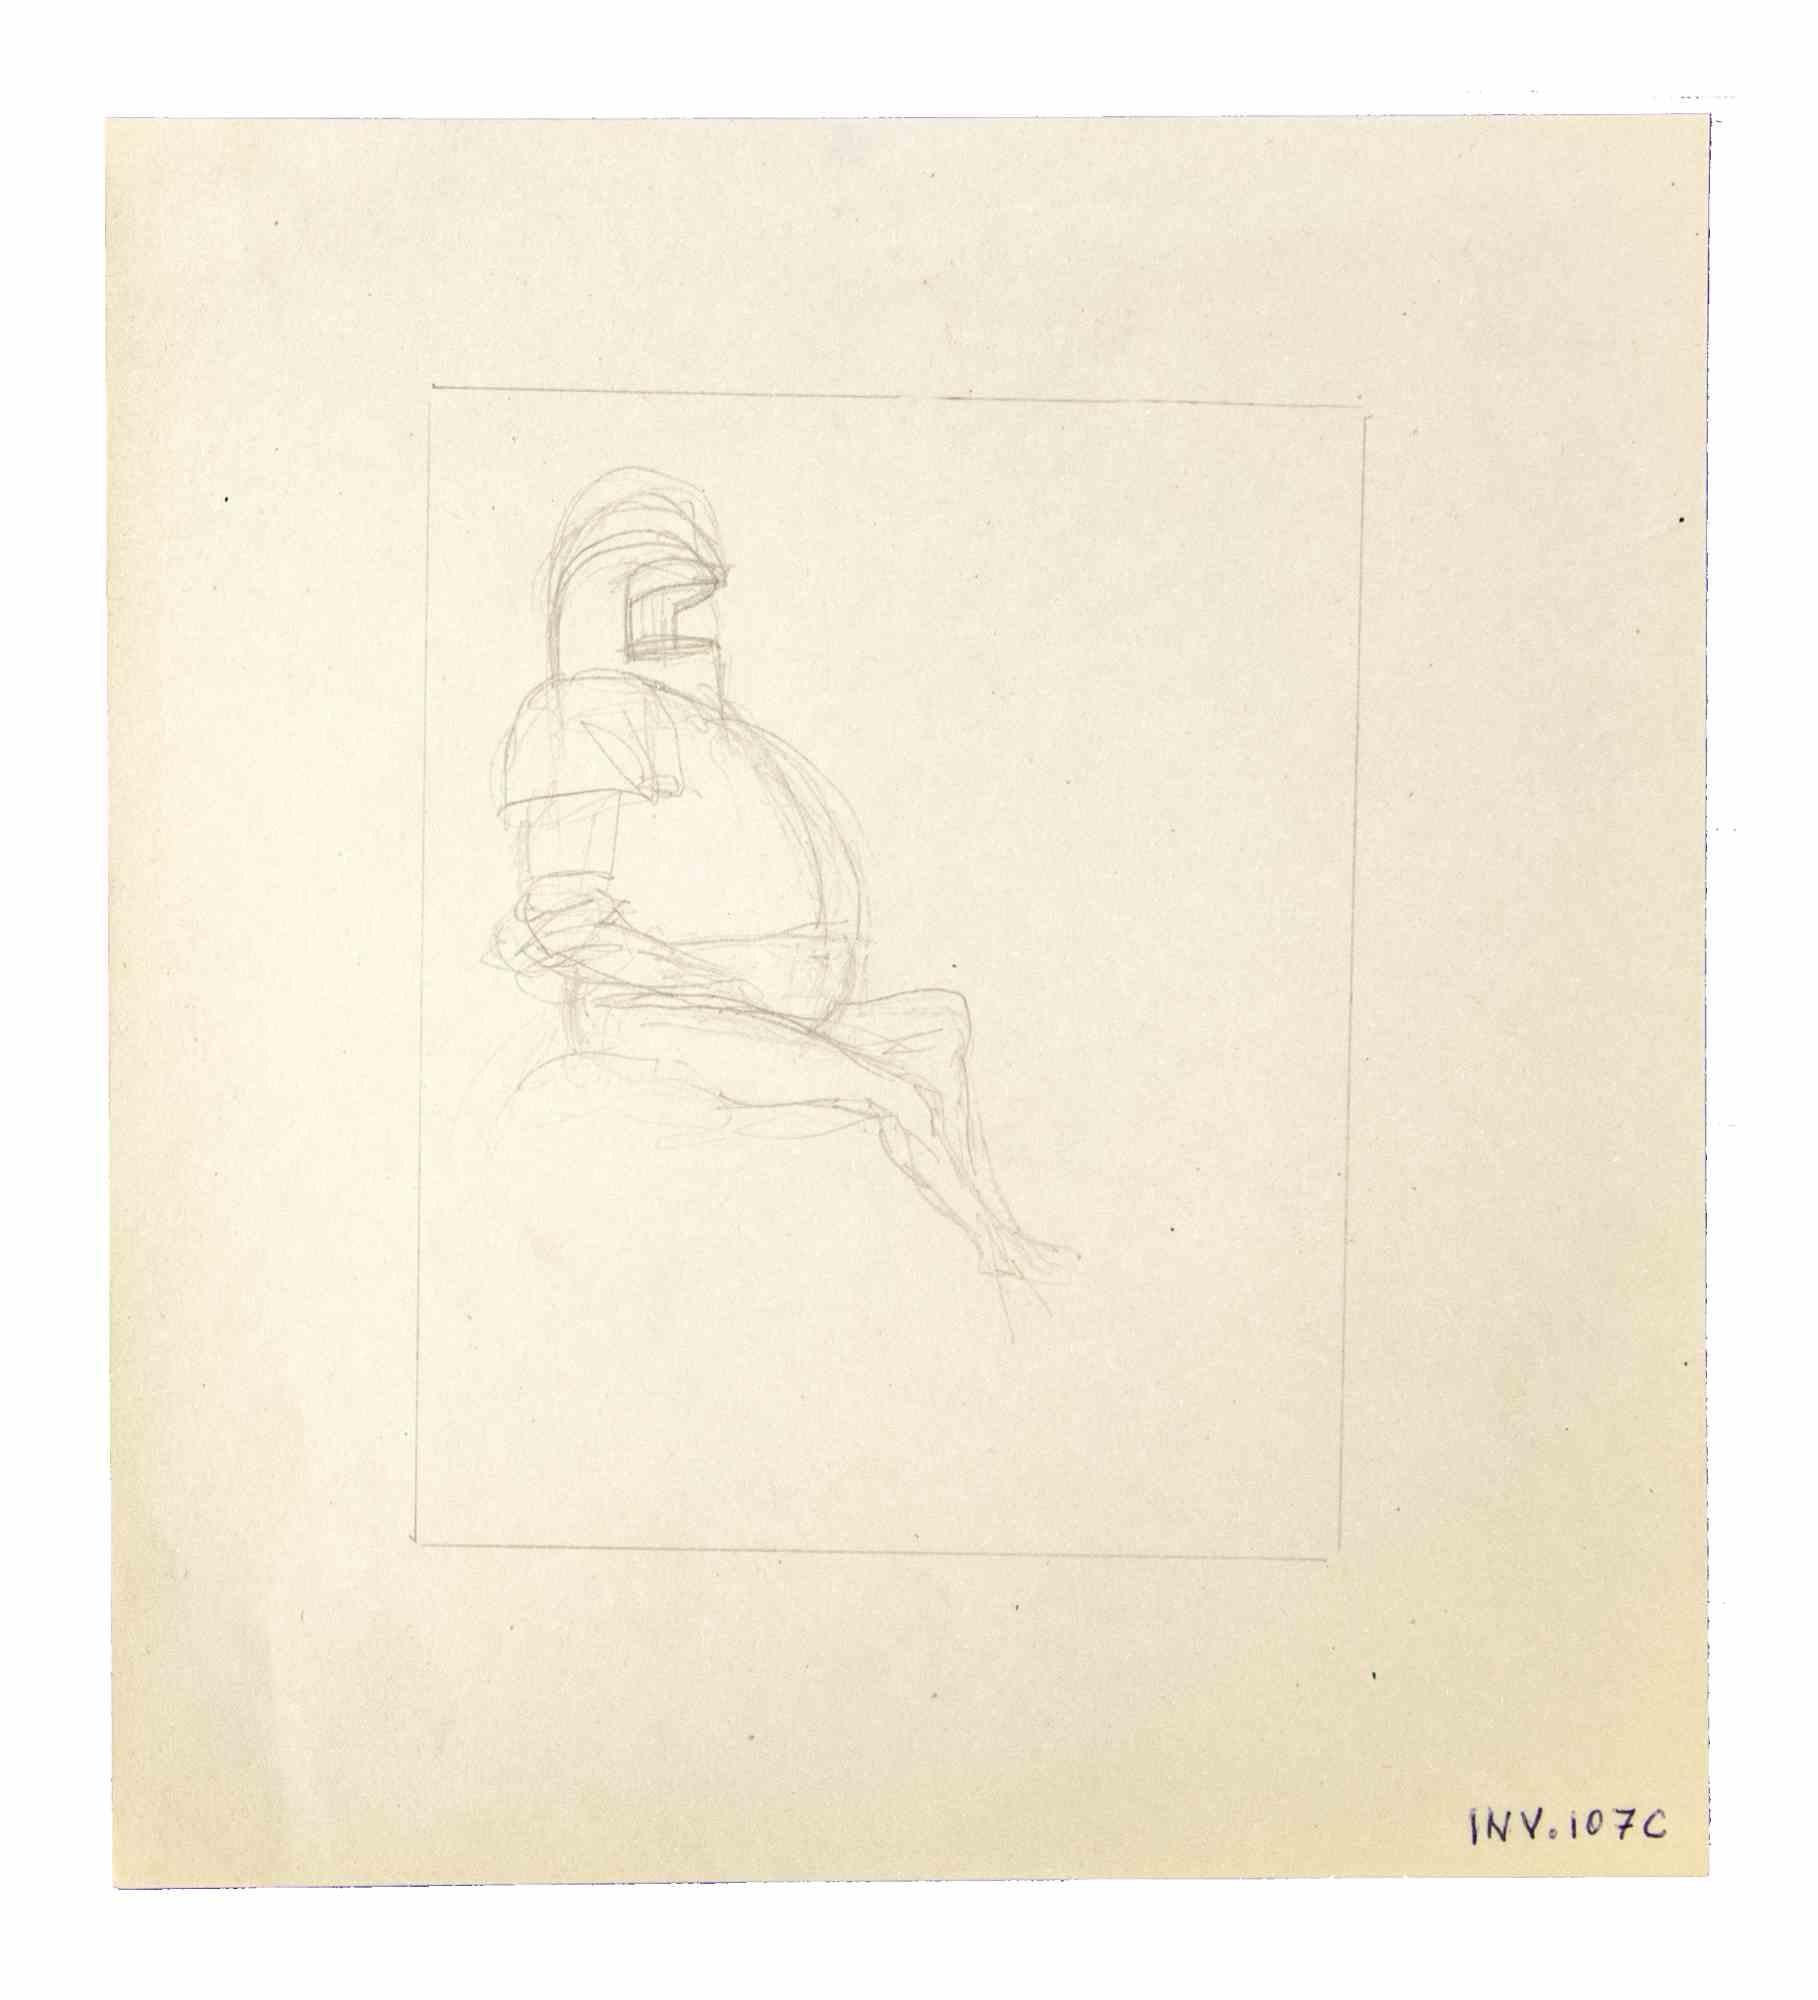 Knight ist ein Originalkunstwerk, das in den 1970er Jahren von dem italienischen zeitgenössischen Künstler  Leo Guida  (1992 - 2017).

Originalzeichnungen mit Bleistift auf Papier.

Guter Zustand, aber gealtert.

Das Kunstwerk wird durch kräftige